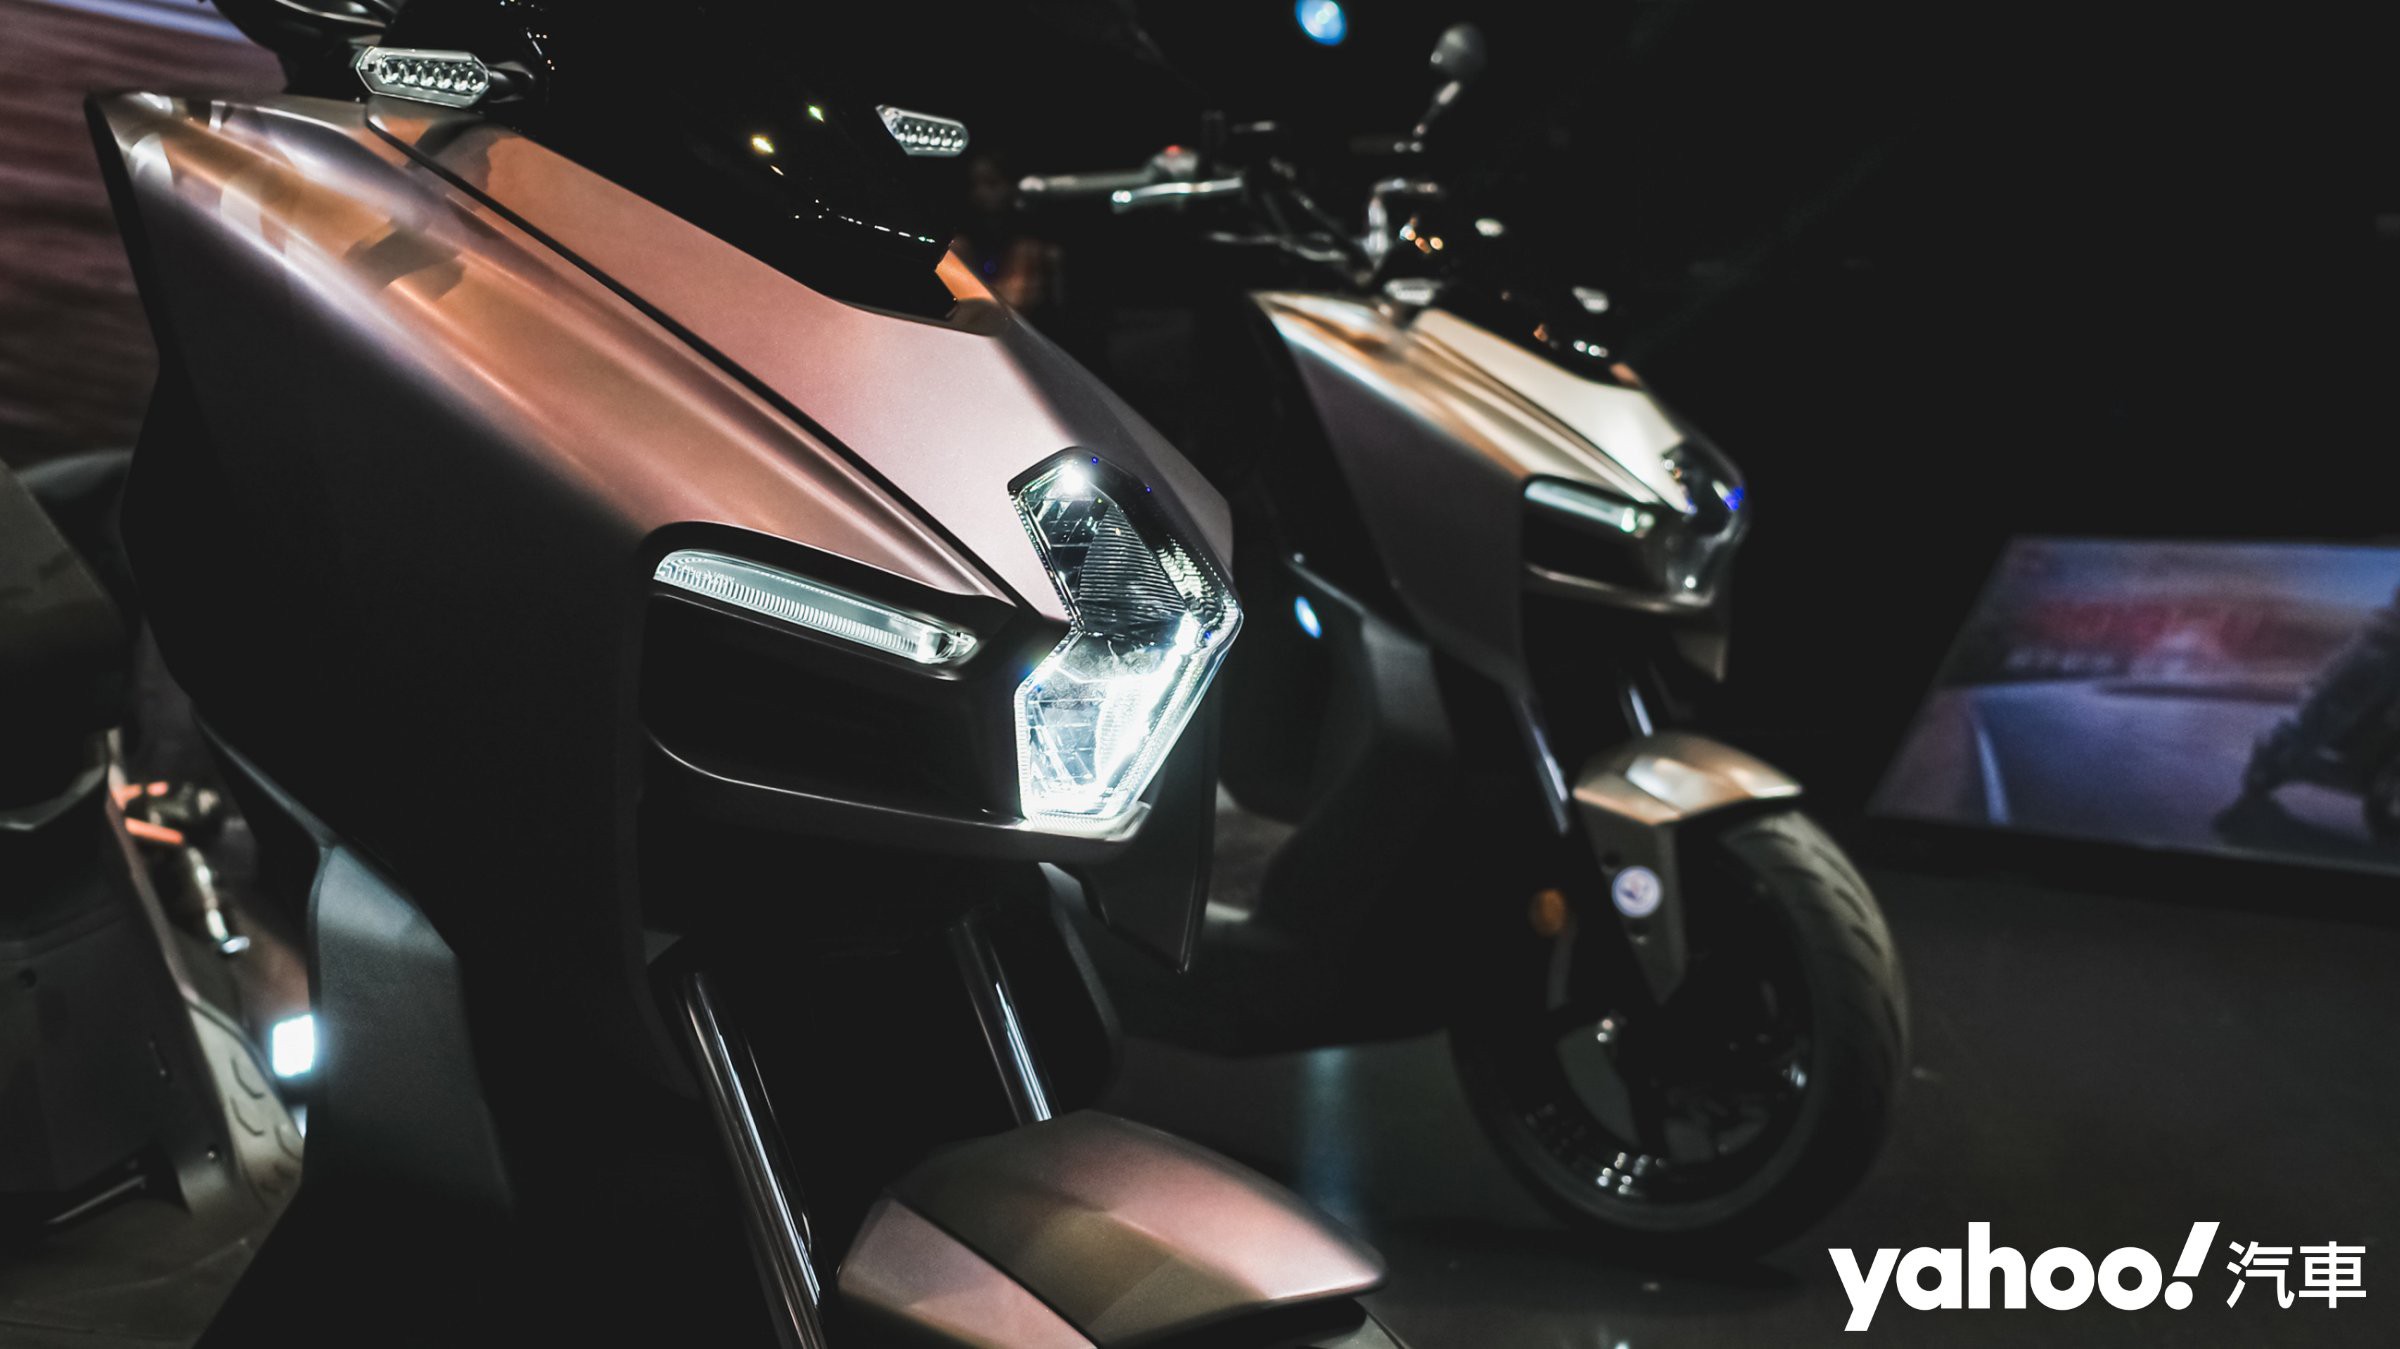 Honda ra mắt Vision 2017 đen mờ  Vision màu trắng ngà  Danhgiaxe